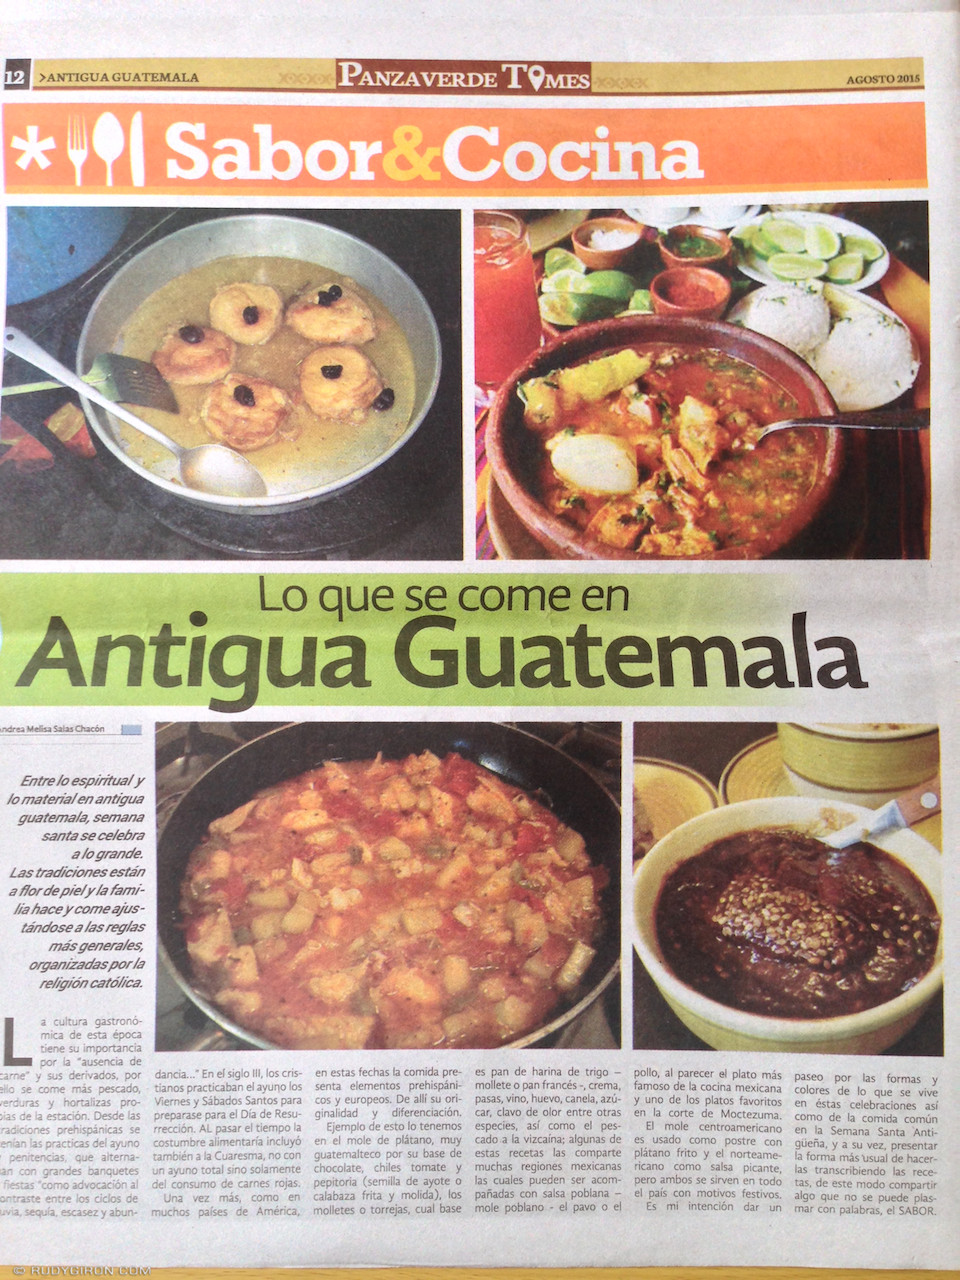 Panza Verde Times publica dos de mis fotografías de comida guatemalteca